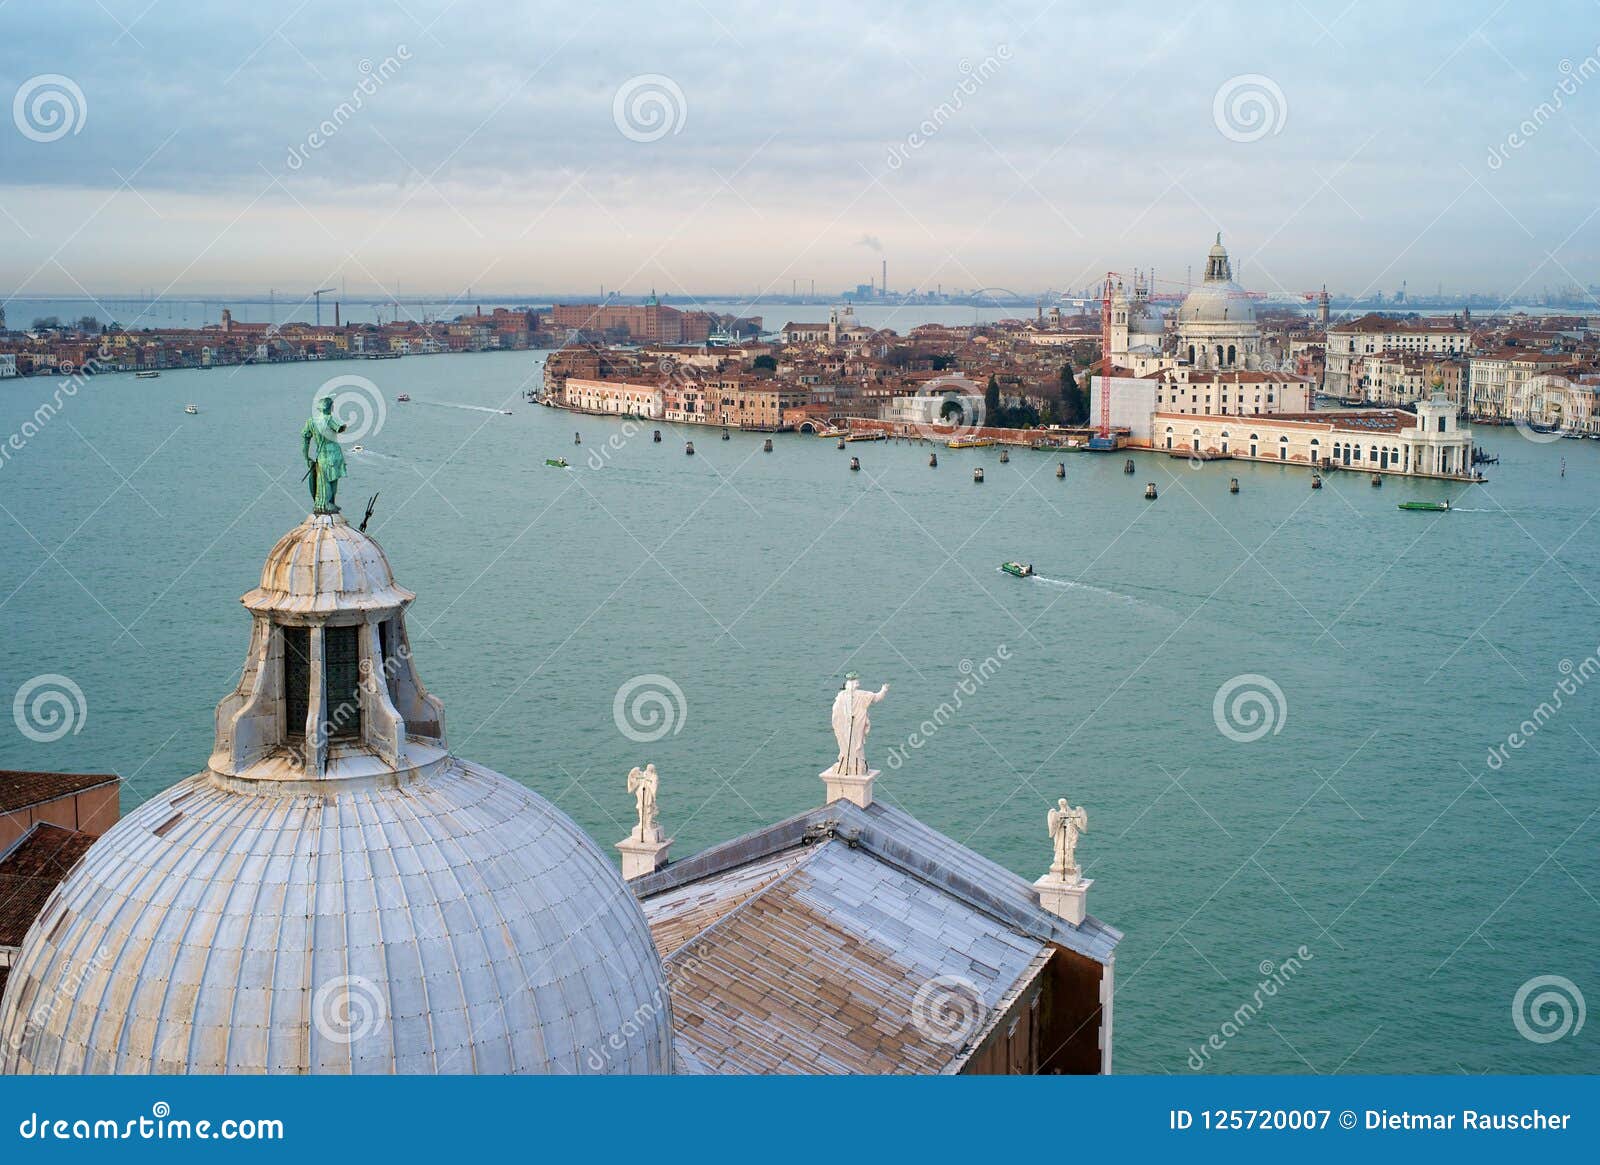 Cityscape of Venice from San Giorgio Maggiore Stock Image - Image of ...